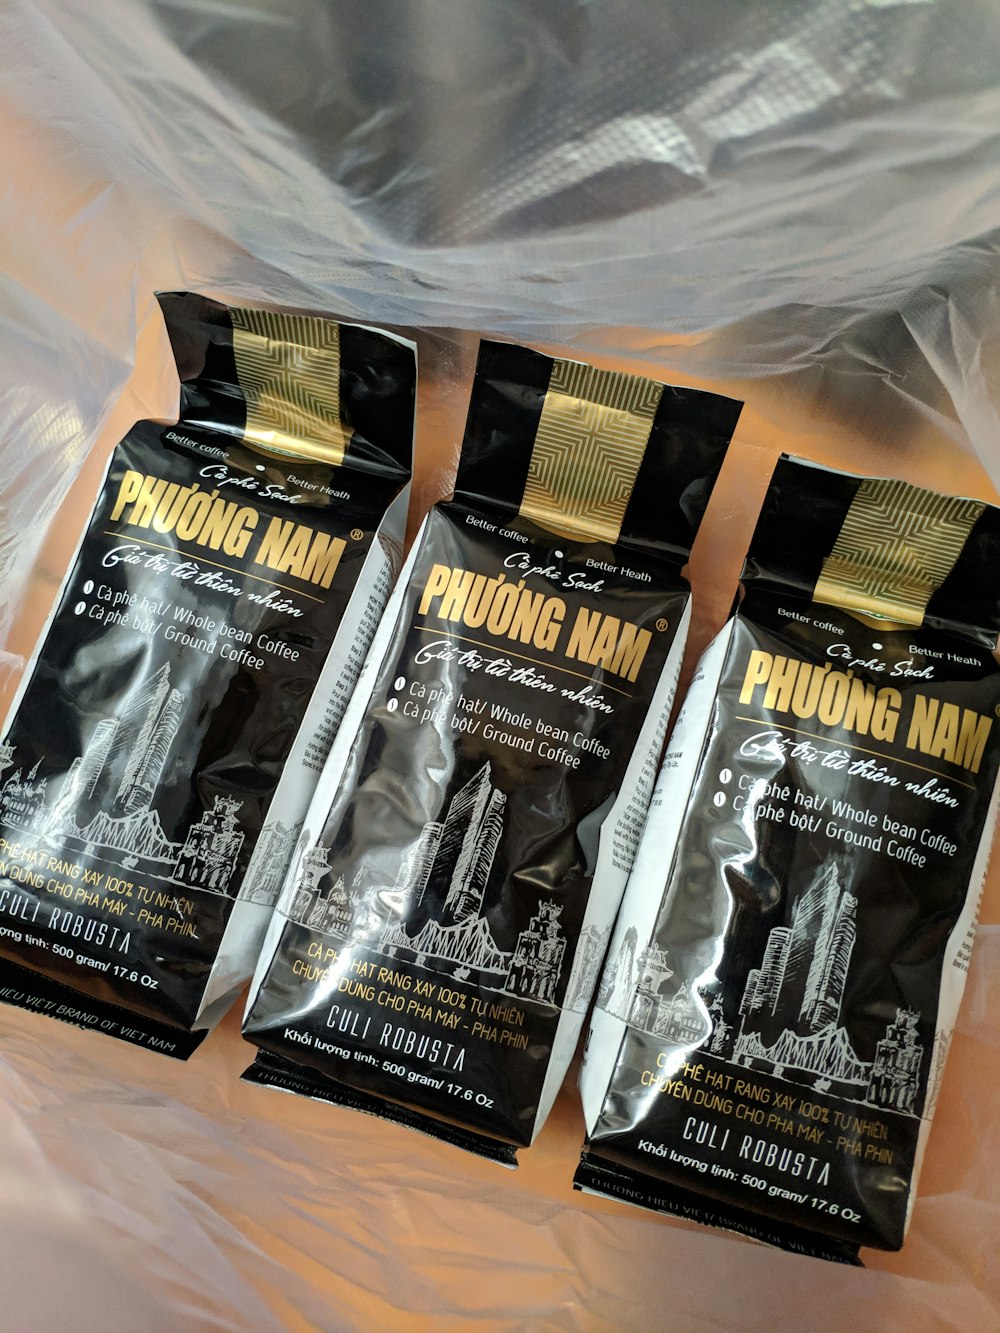 três pacotes de Phoung Nam